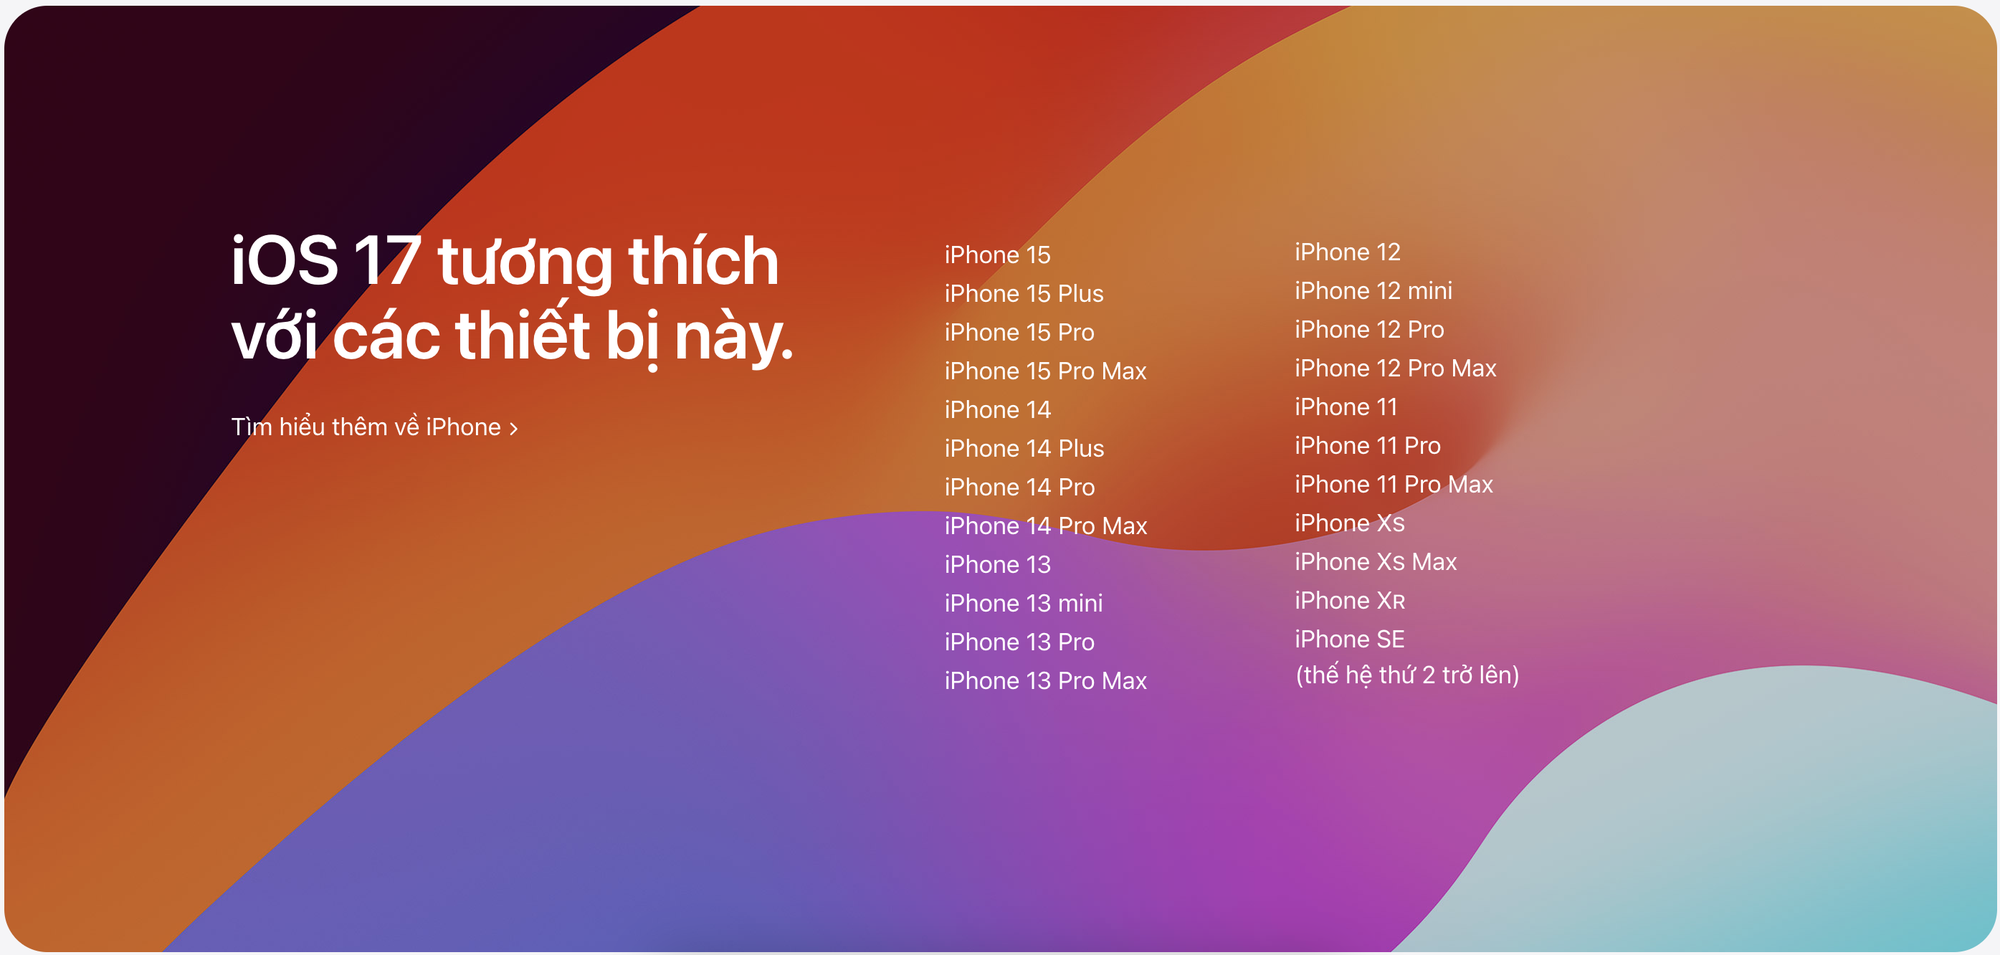 Phát hiện thủ phạm gây ngốn pin trên iPhone, ai đang dùng những mẫu iPhone này nên lưu ý- Ảnh 3.